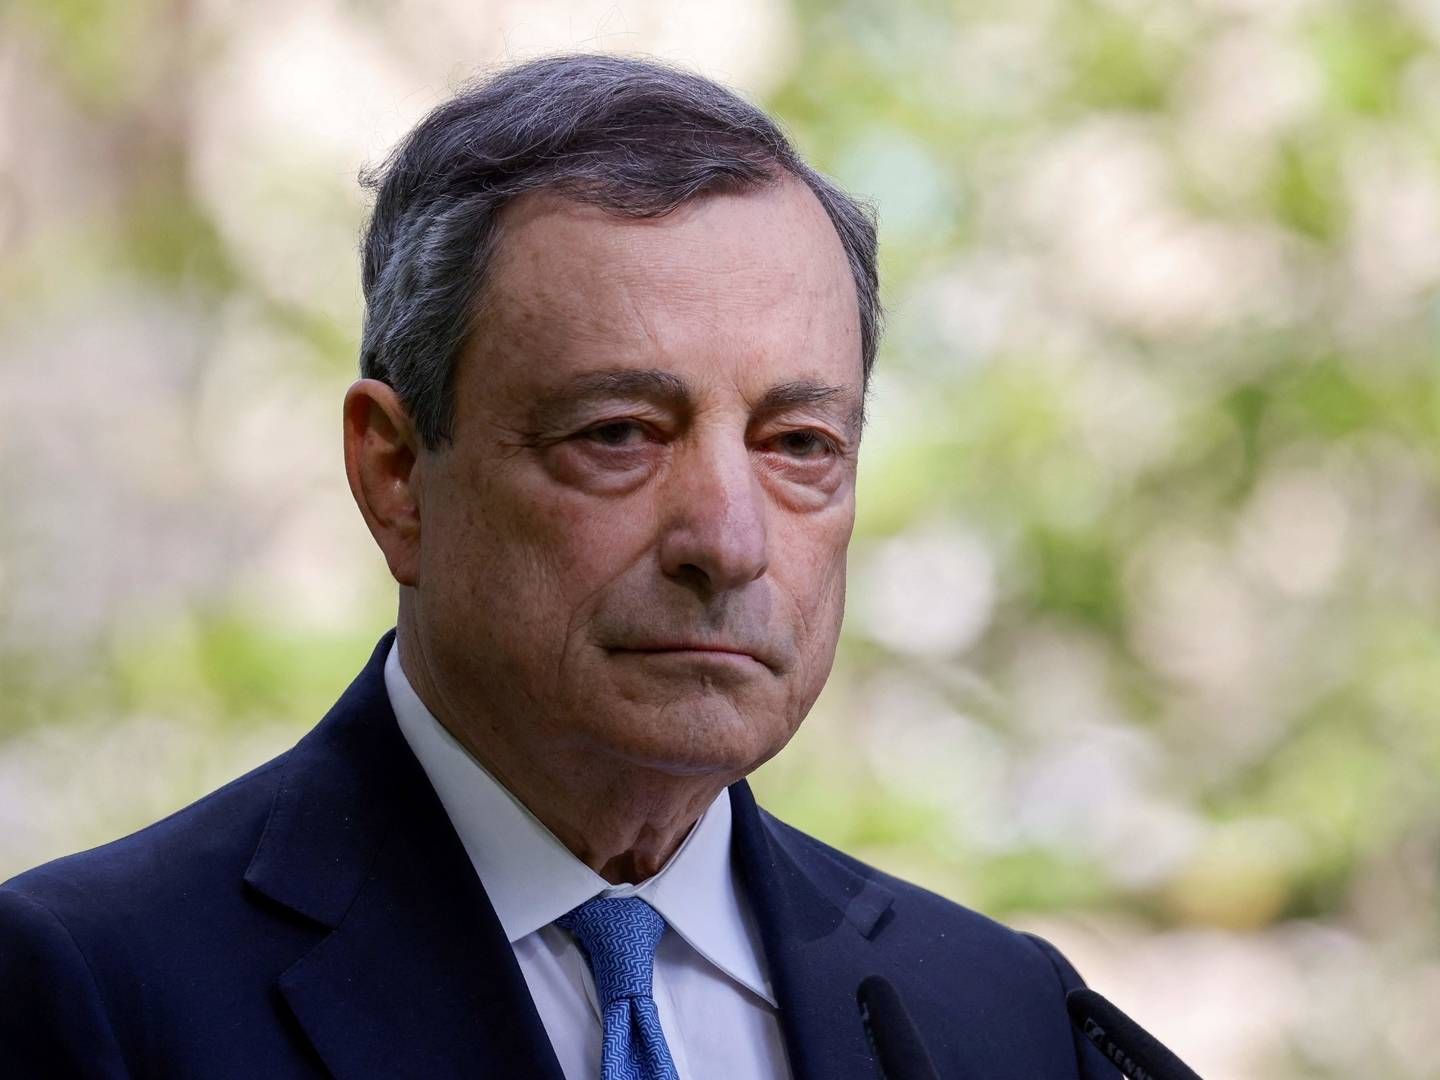 Det begyndte med en skraldekrise og endte med, at den italienske premierminister, Mario Draghi, nu fratræder sin post. | Foto: Ludovic Marin/AFP / AFP